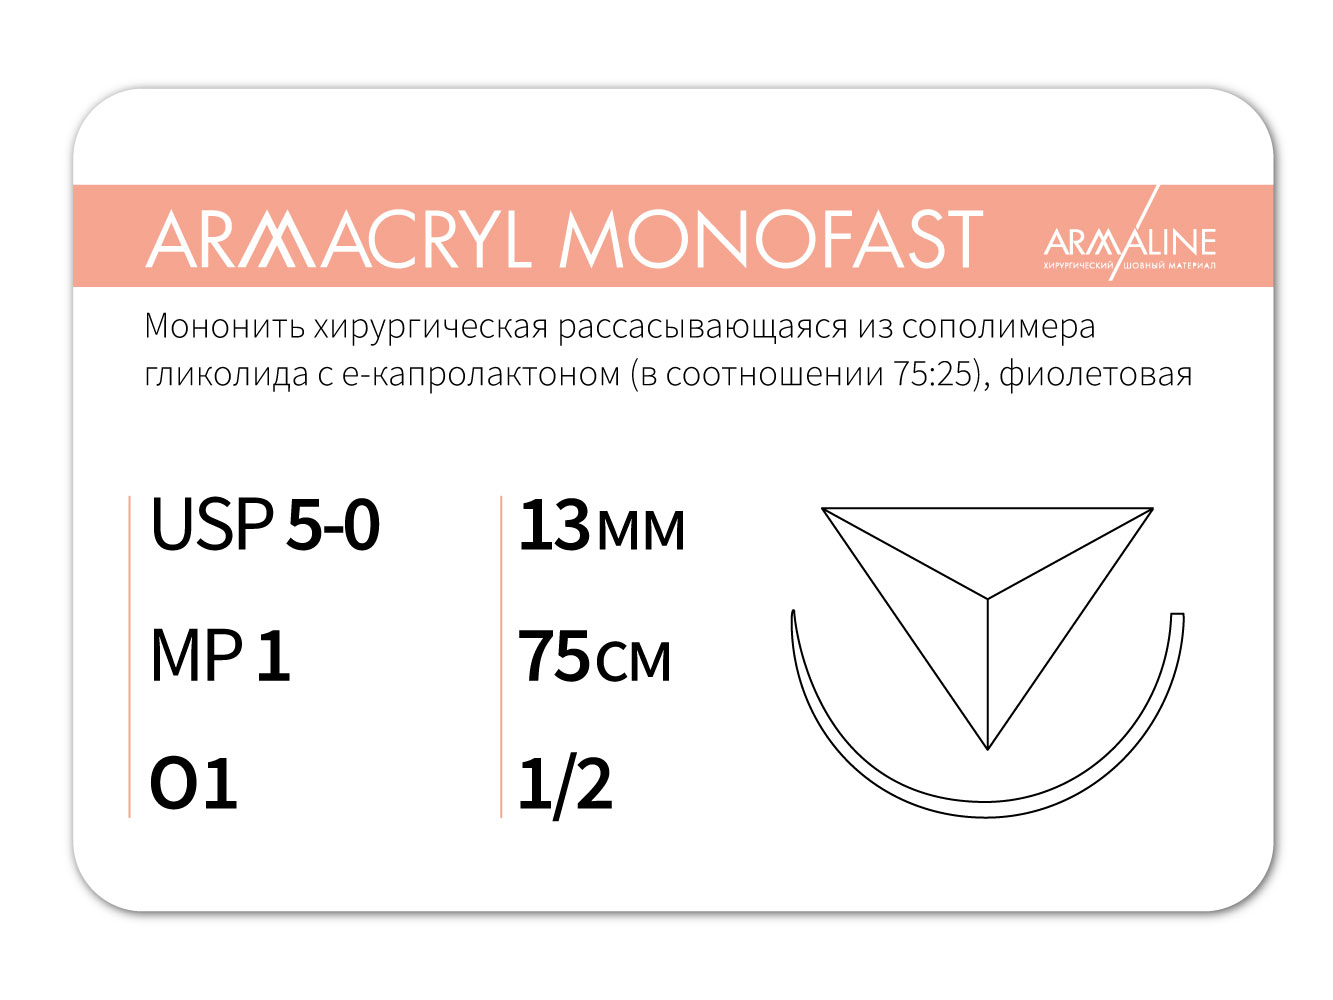 ARMACRYL MONOFAST/Армакрил монофаст (5-0) 75 см - материал хирургический шовный стерильный с атравматической обратно-режущей иглой